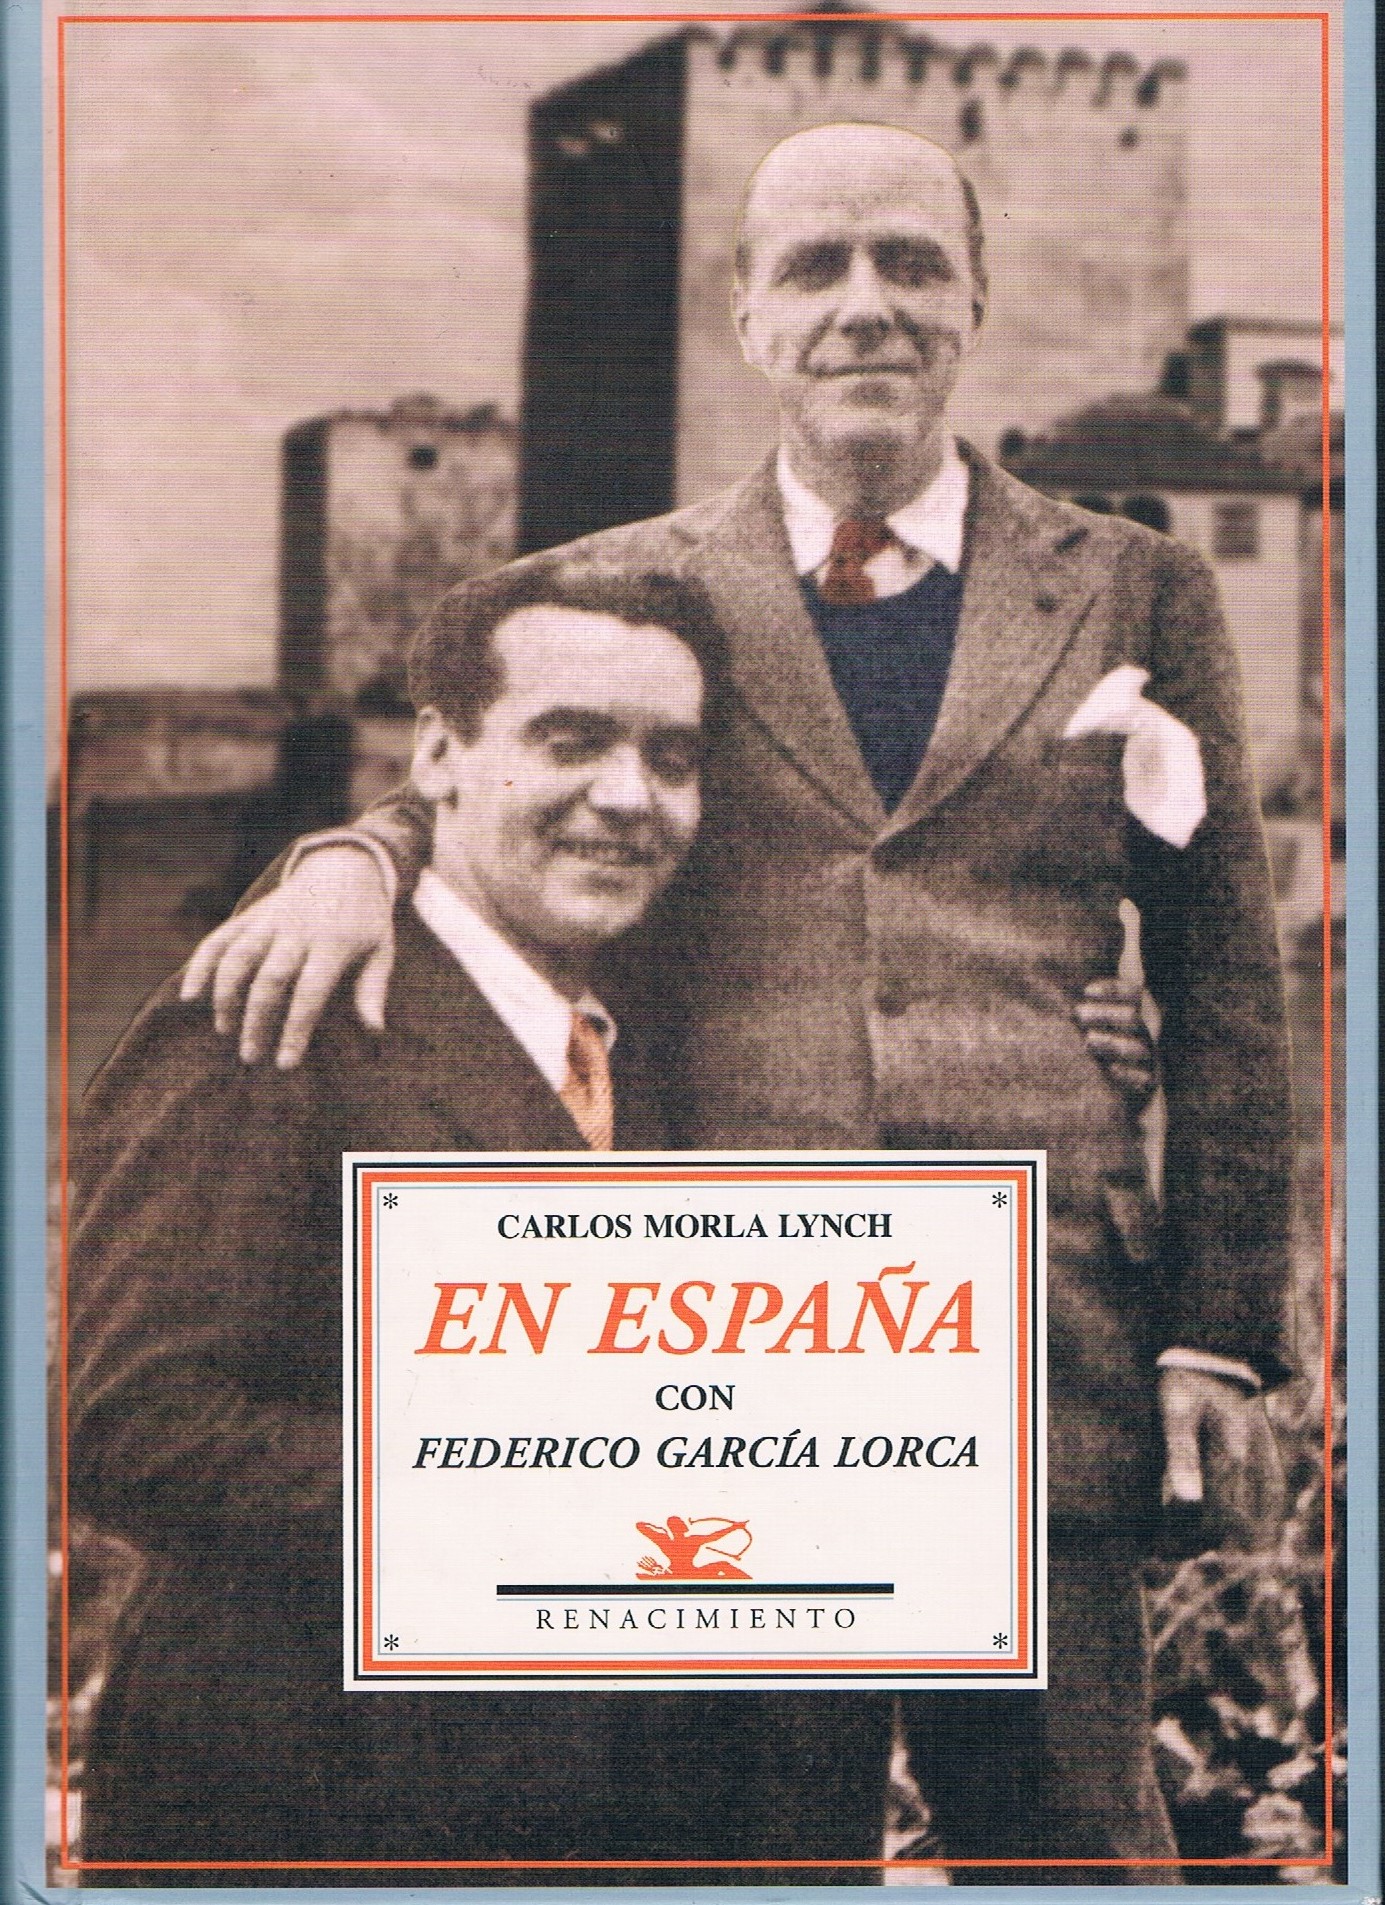 Portada del libro de Carlos Morla Lynch "En España con Federico García Lorca"